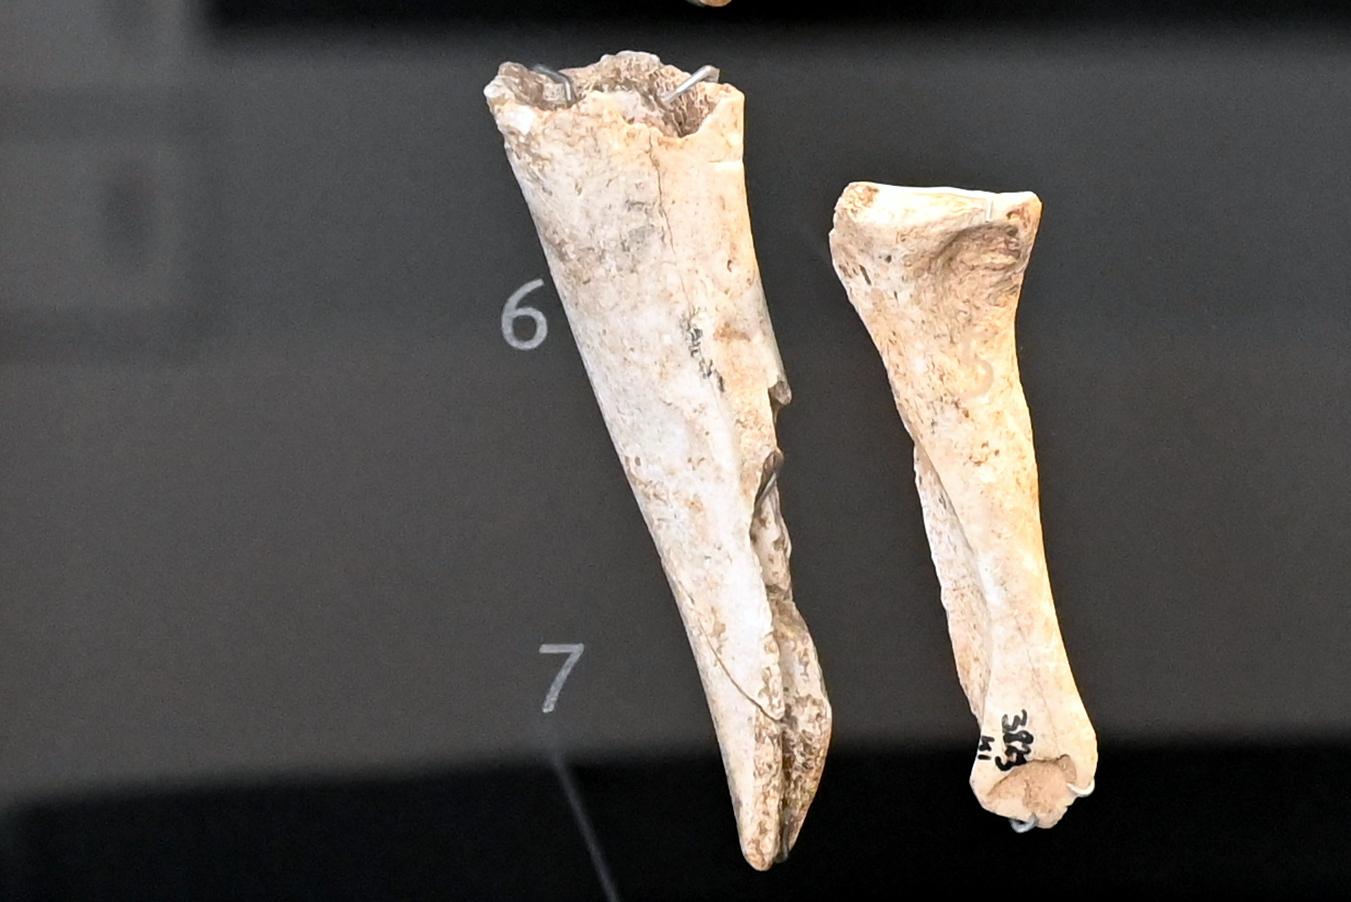 Röhrenmeißel, Neolithikum (Jungsteinzeit), 5500 - 1700 v. Chr., 3800 - 3600 v. Chr.